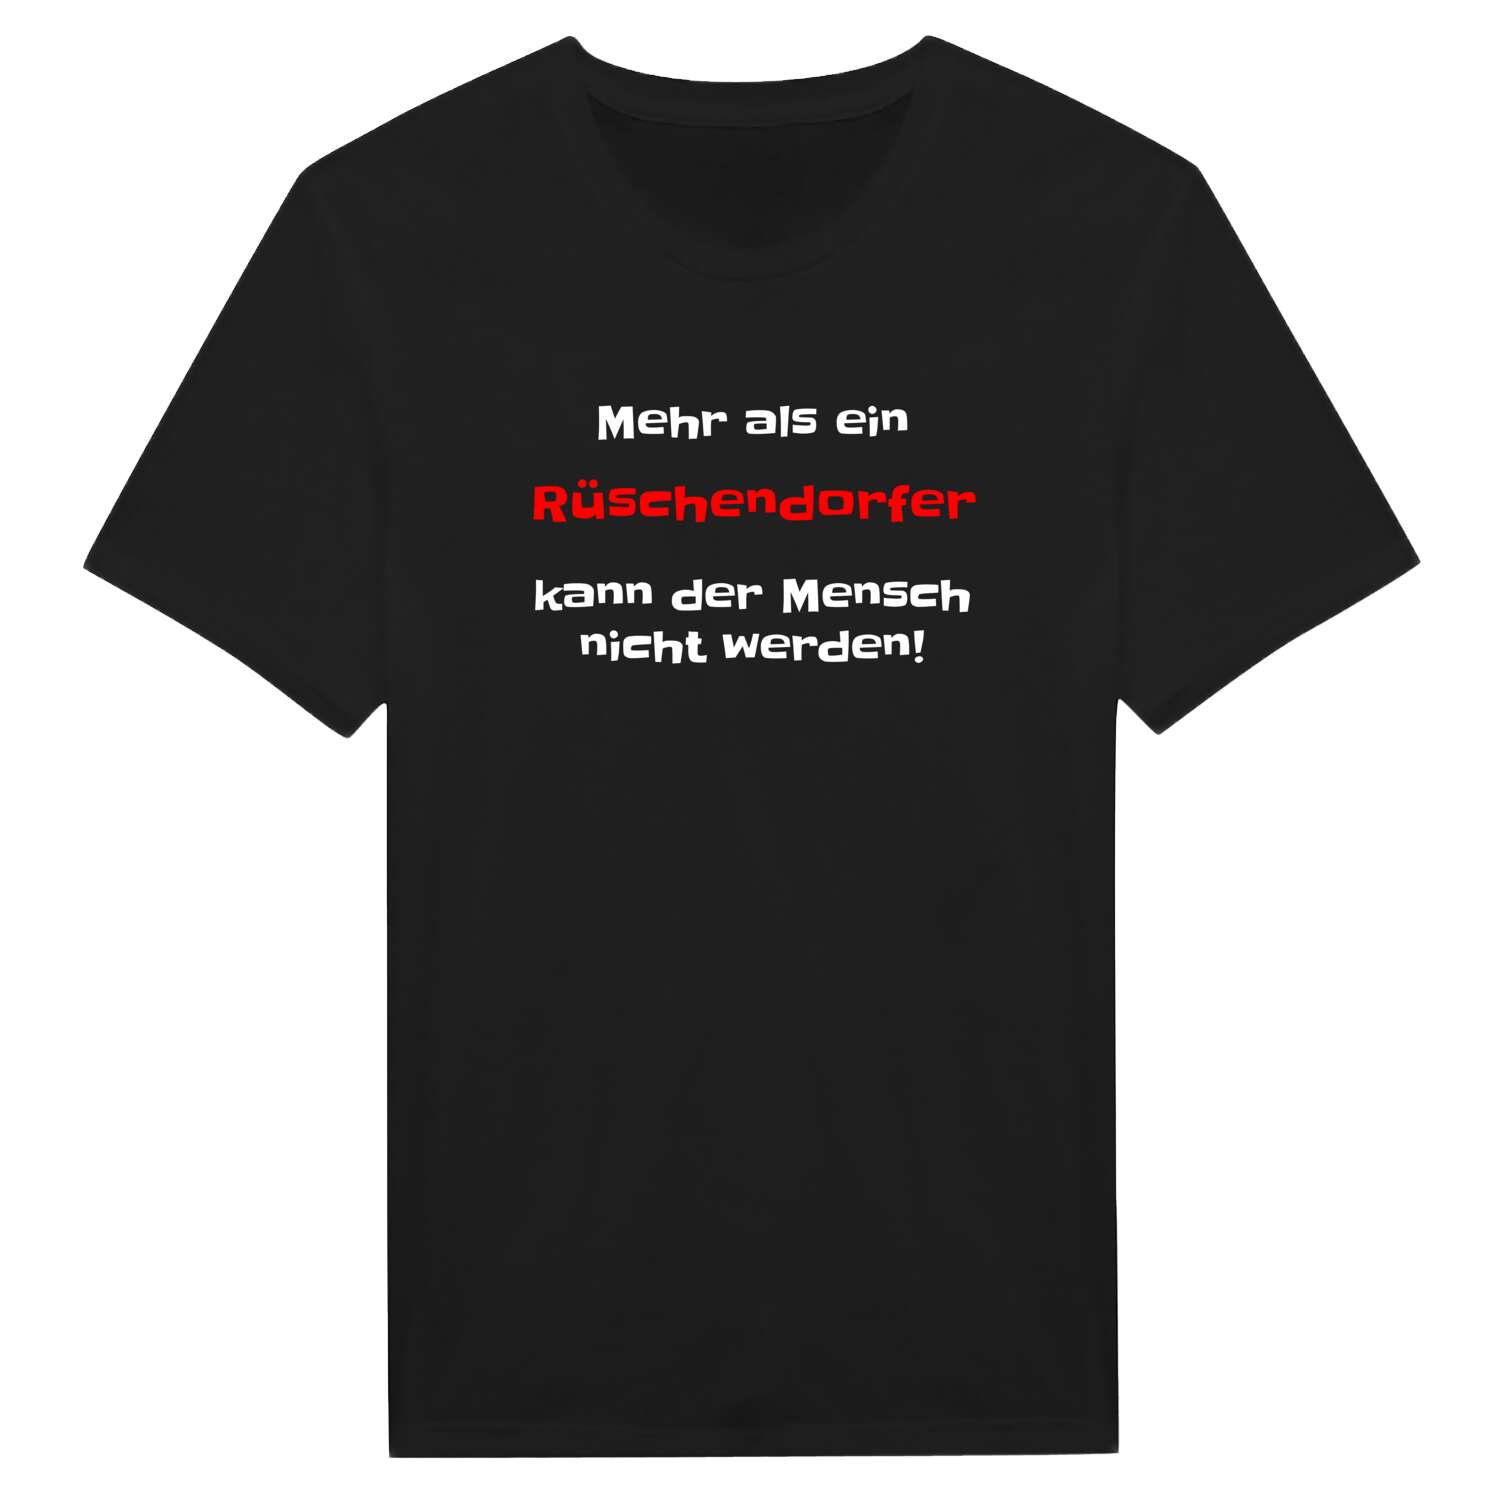 Rüschendorf T-Shirt »Mehr als ein«